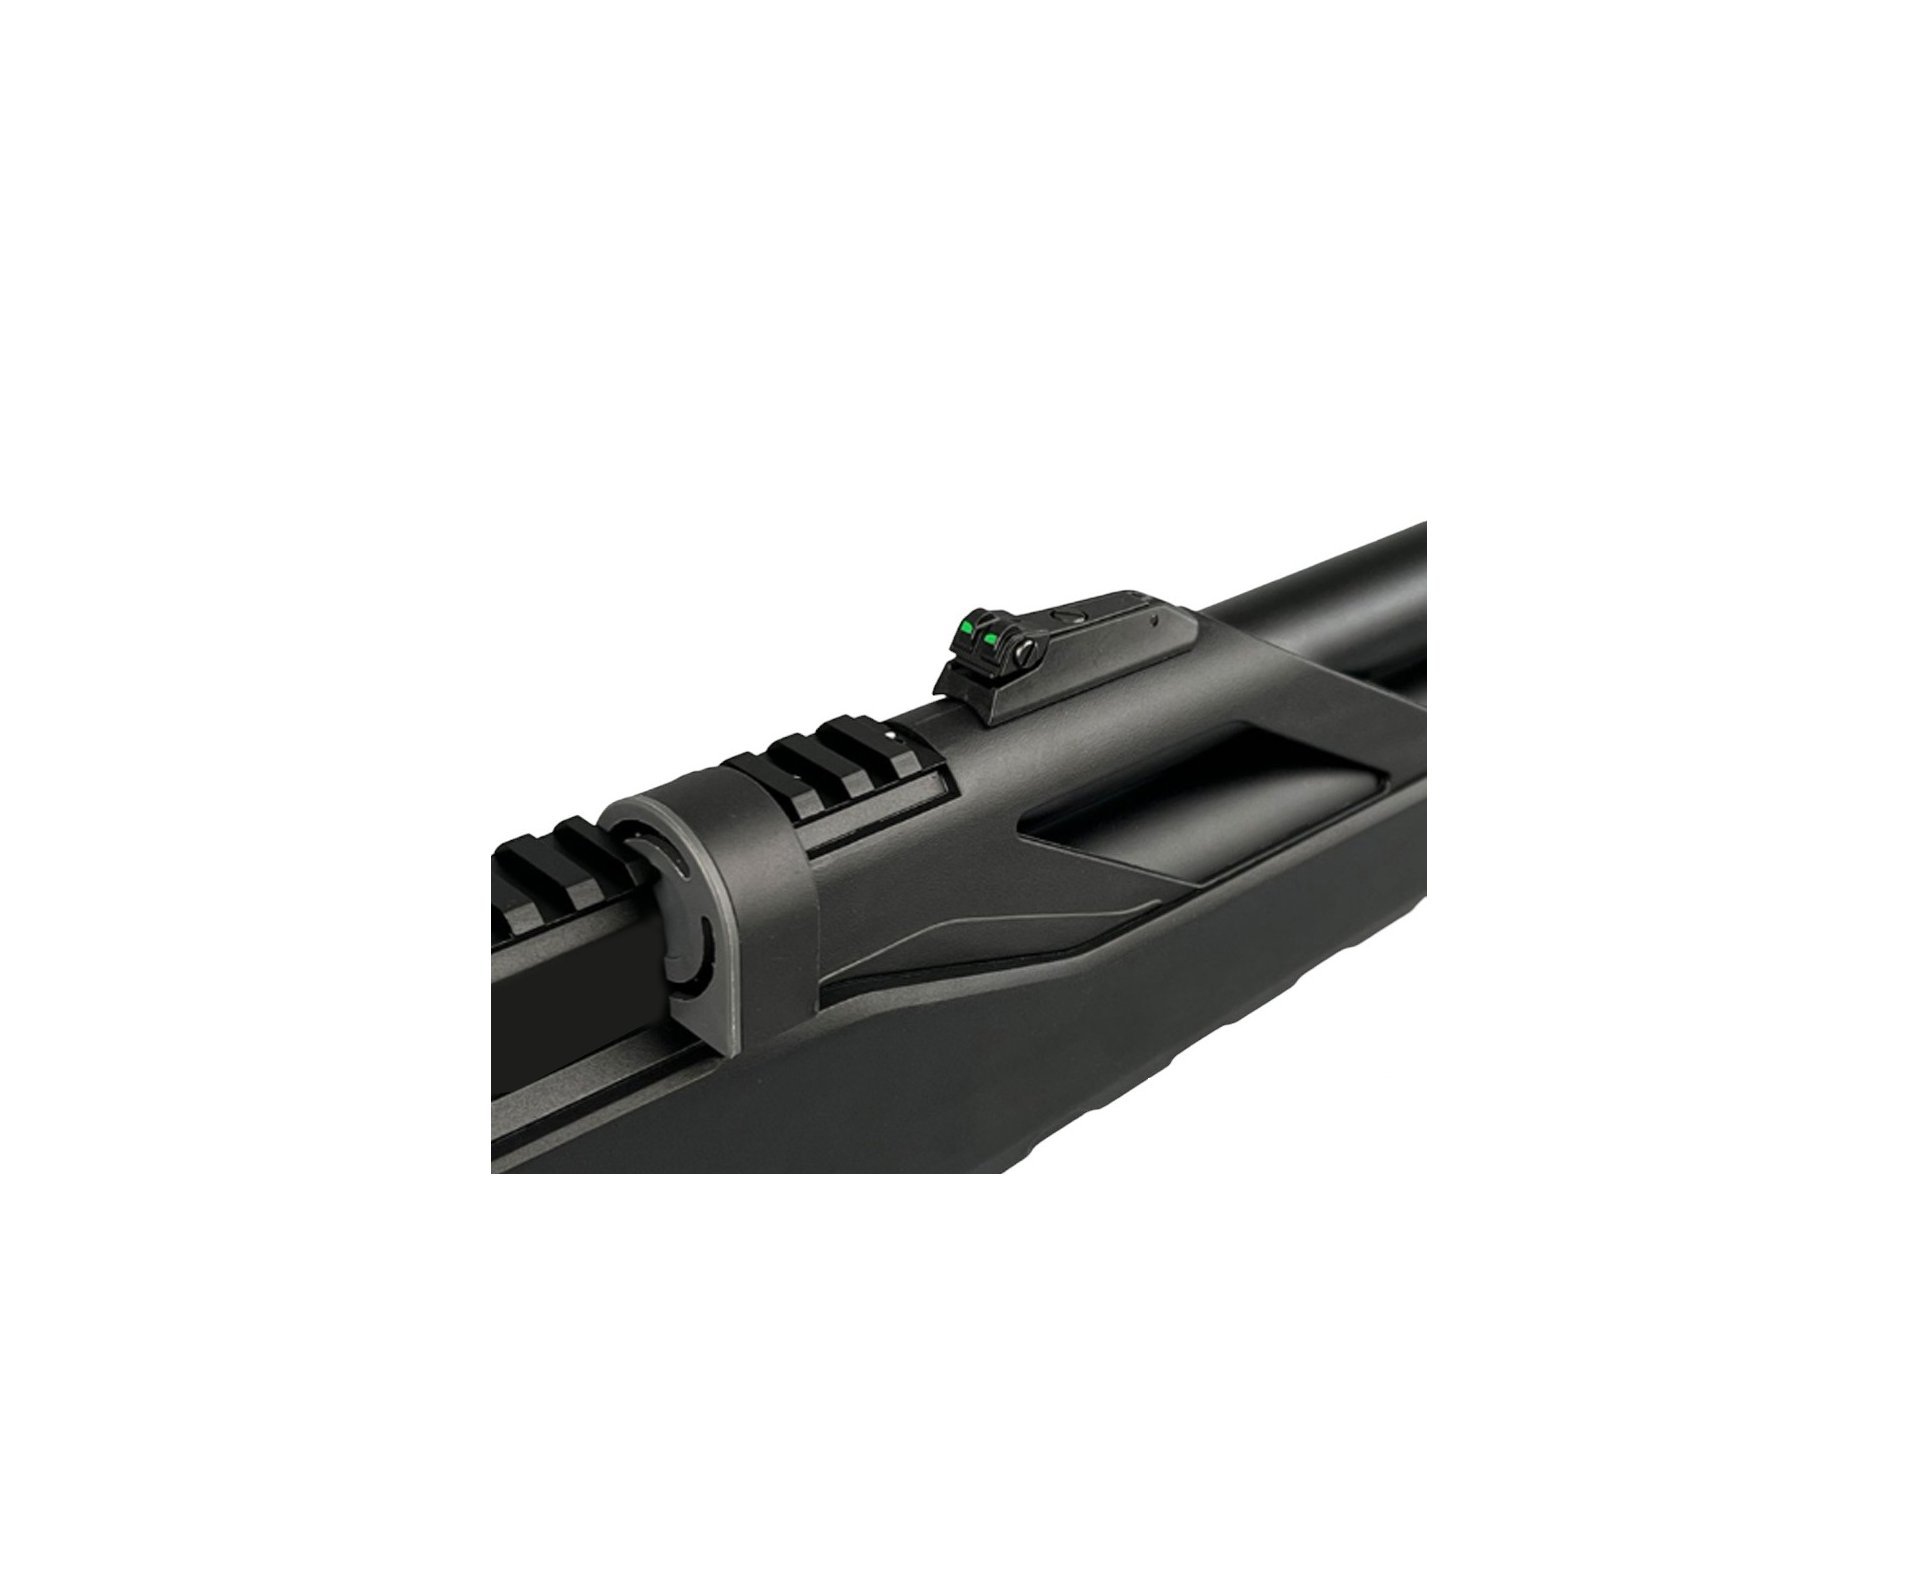 Carabina de Pressão PCP Artemis T-REX 5.5mm com Válvula Reguladora - Fixxar + Bomba + Capa + Chumbinho + Kamuff + Alvos